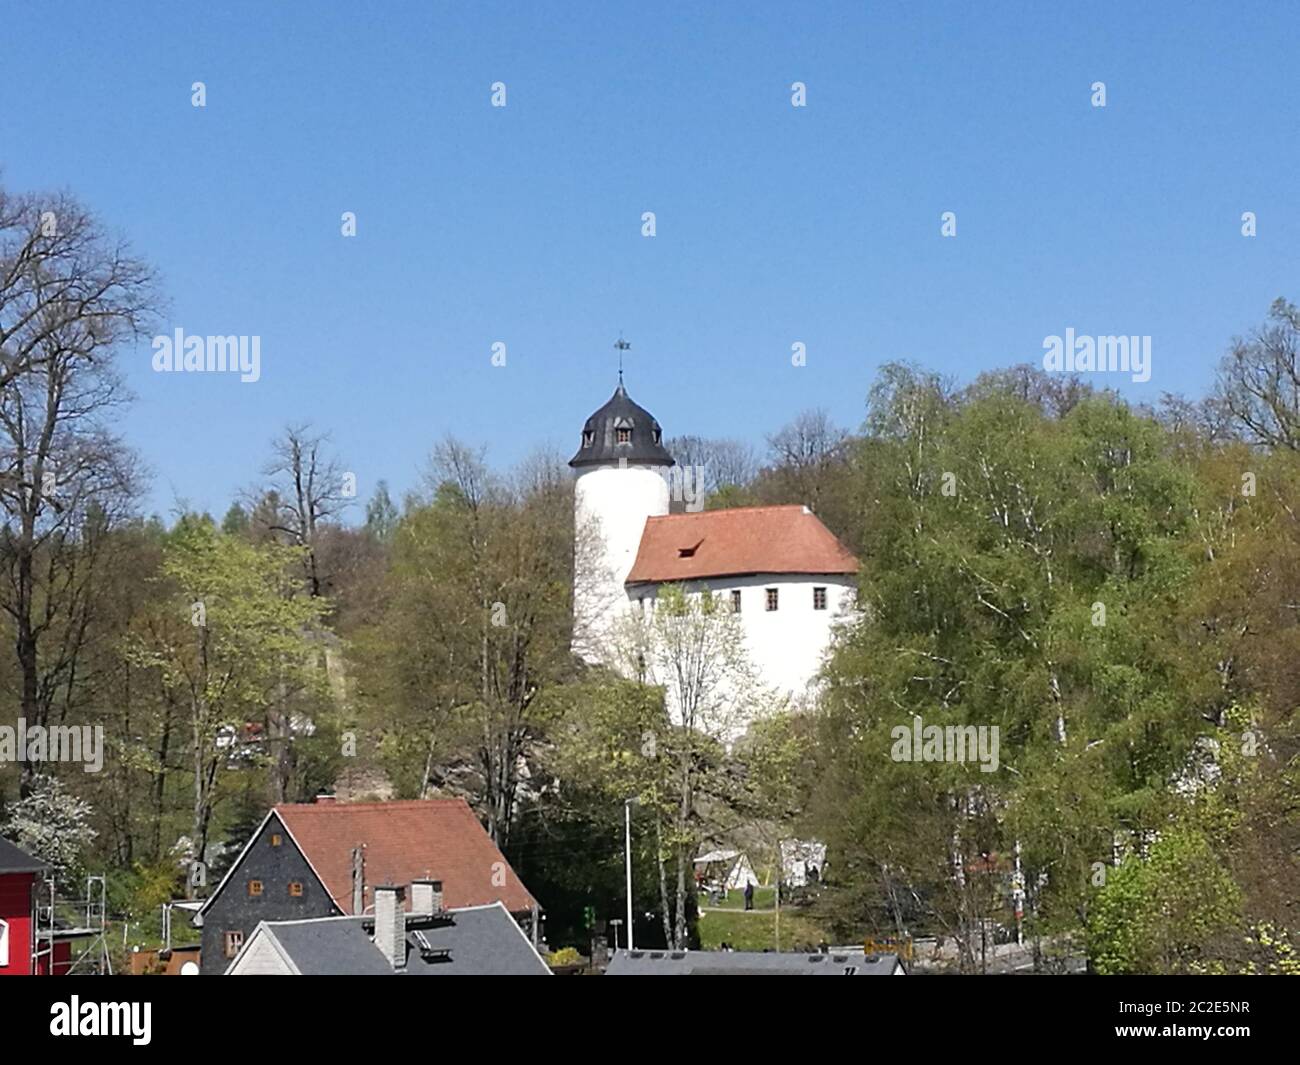 Blick über Hausdächer zur Burg Rabenstein, mittelalterliche Burganlage in Chemnitz in Sachsen, Deutschland, weiße Burganlage mit rotem Dach und einem Stock Photo